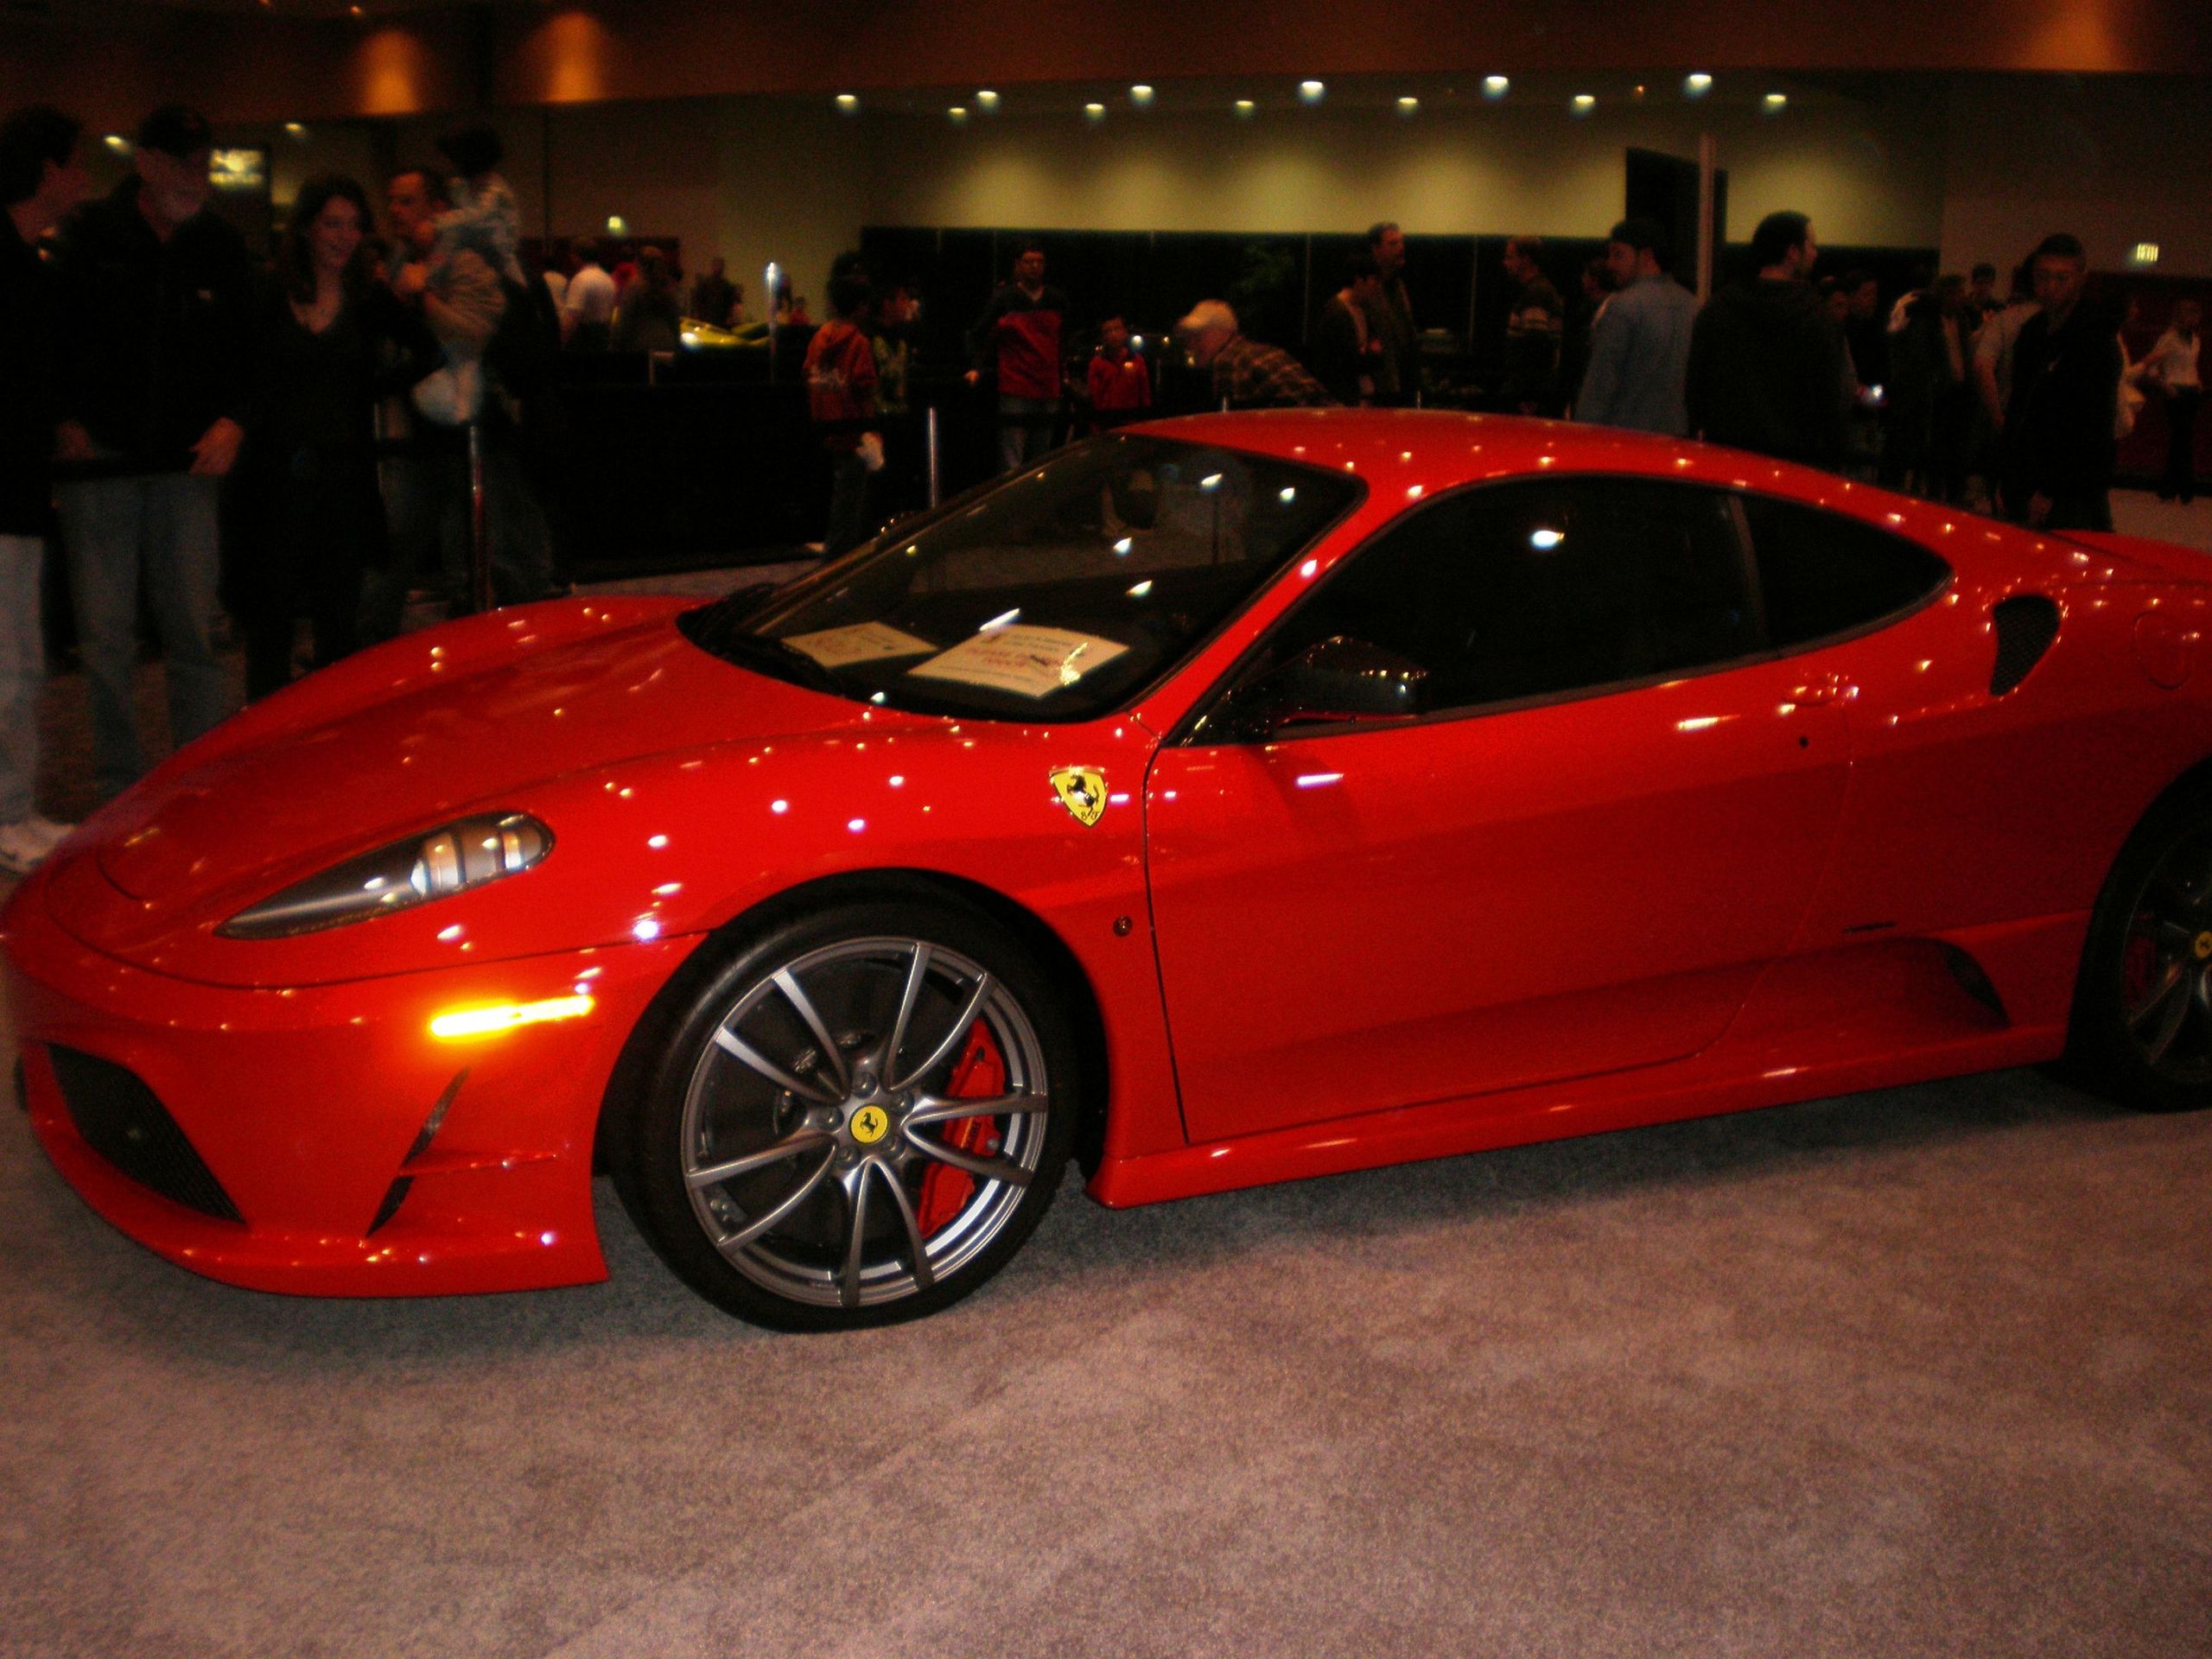 File:2009 red Ferrari 430 Scuderia side.JPG Wikimedia